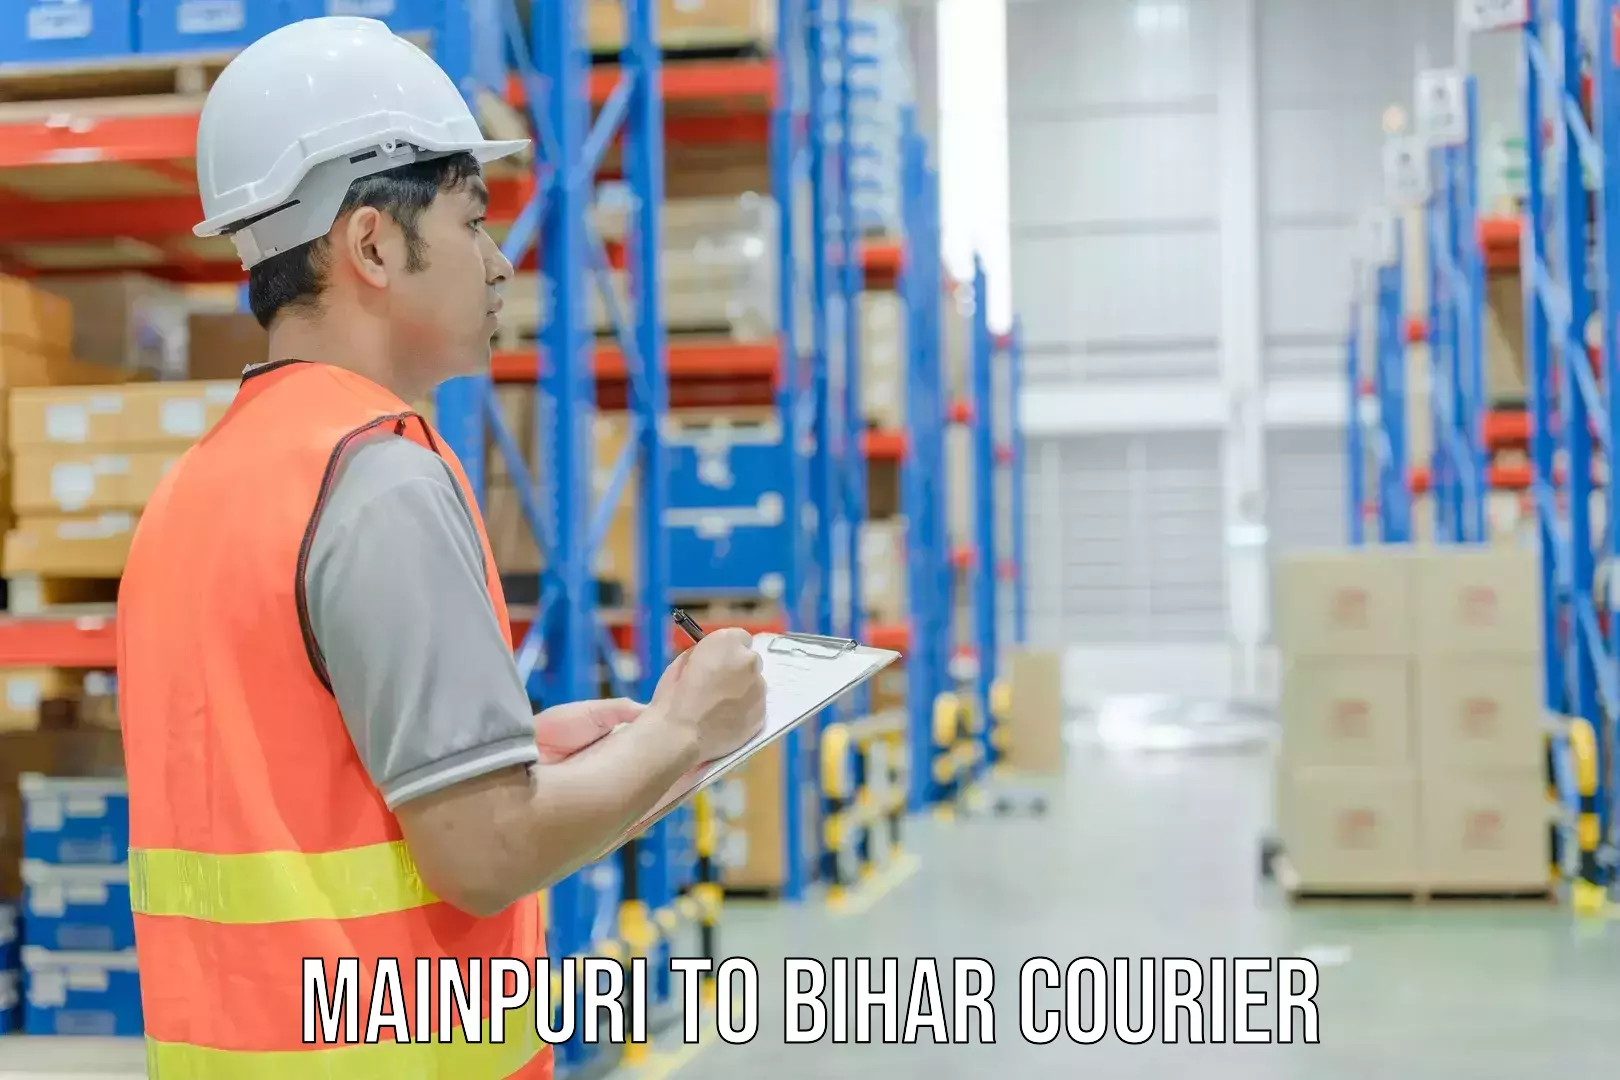 Courier service efficiency Mainpuri to Bihar